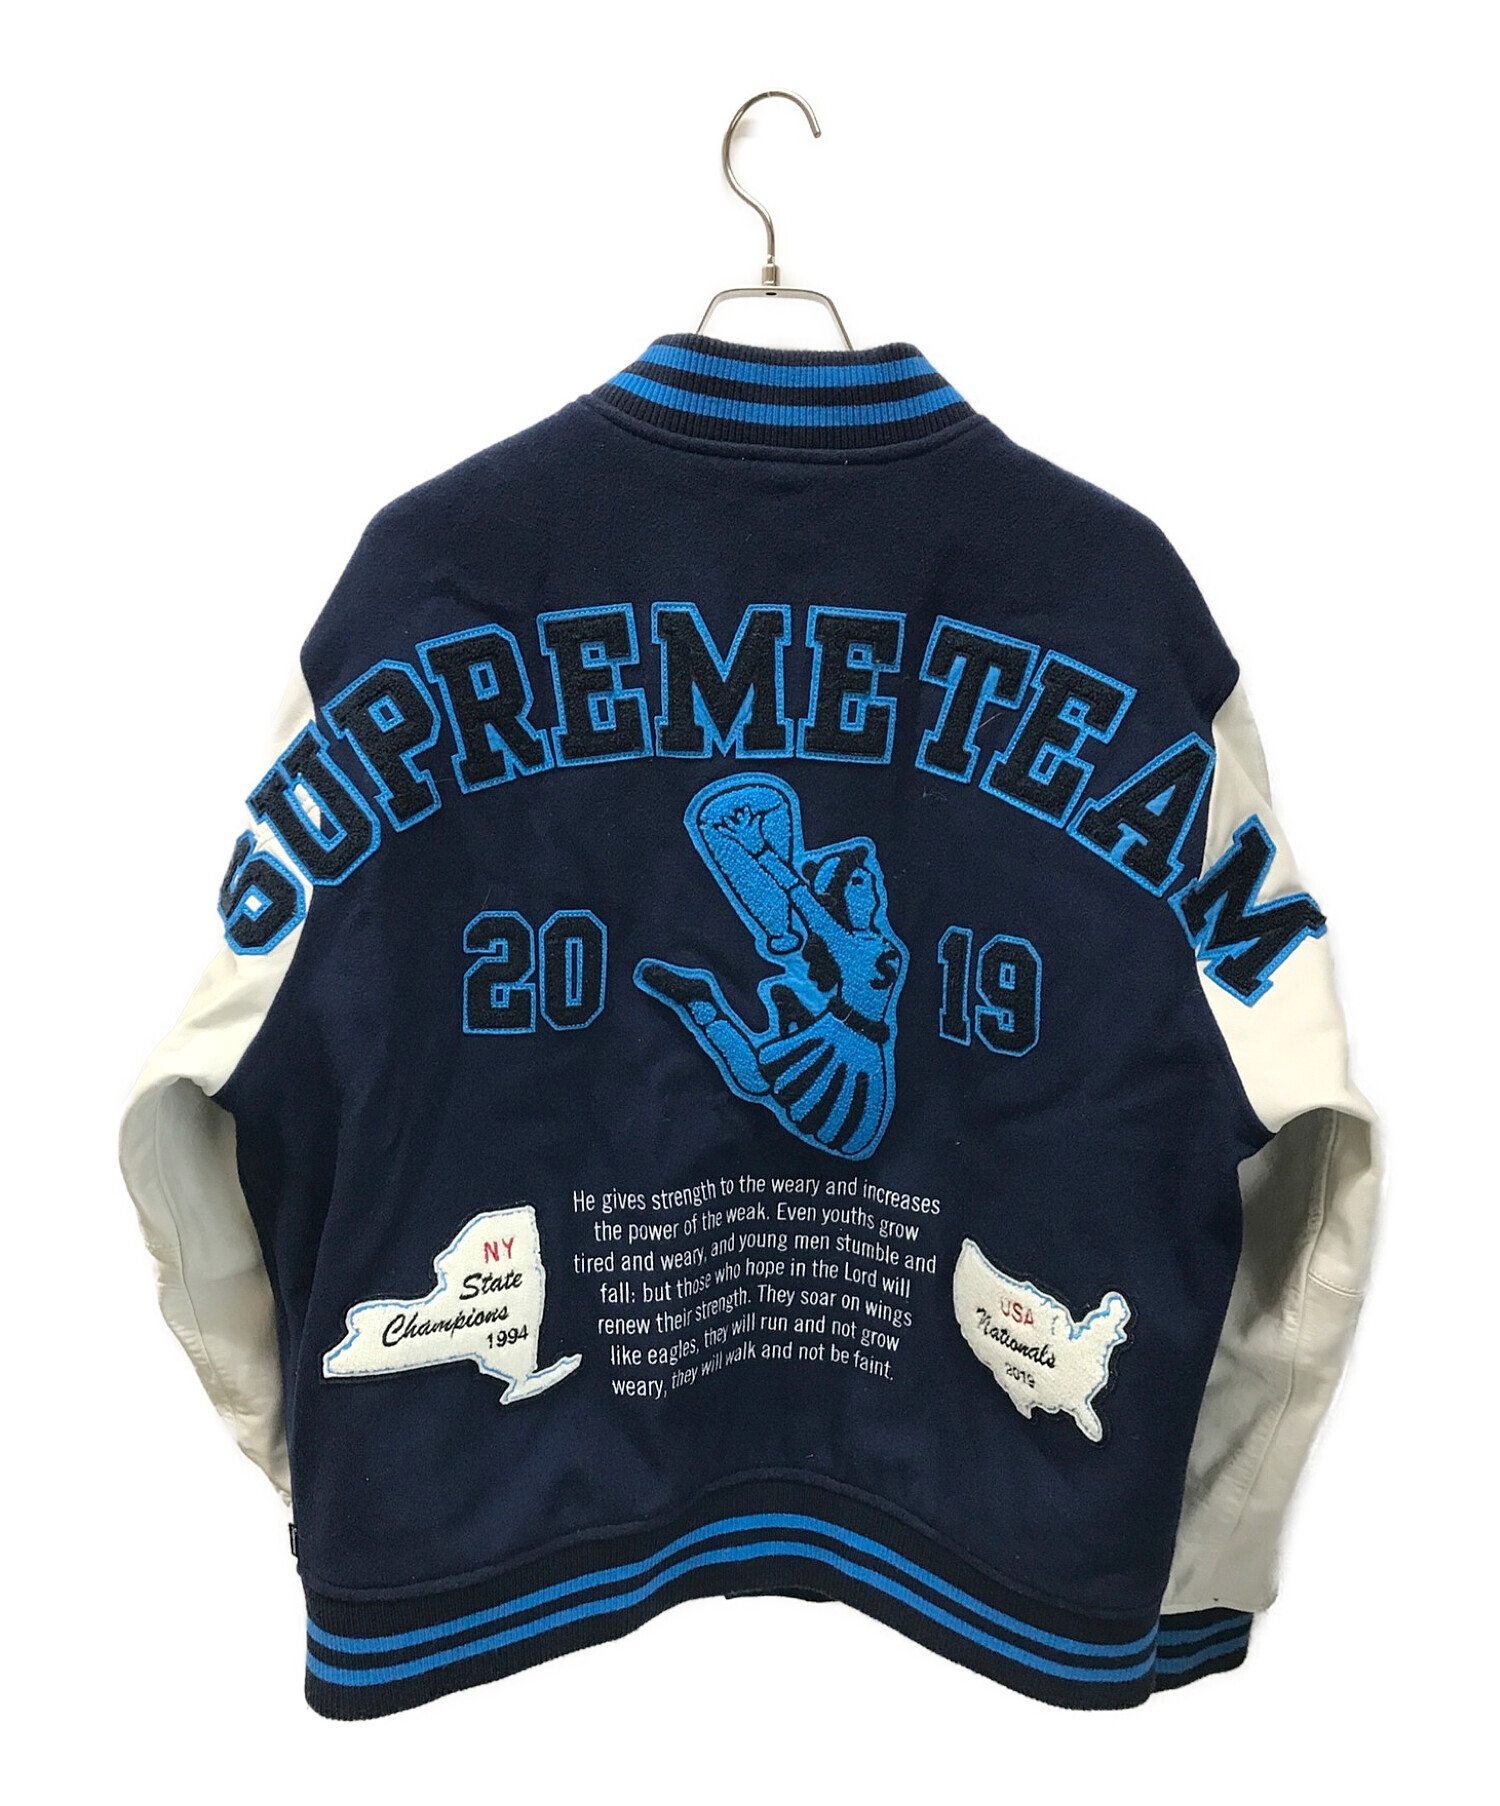 supreme 10fw varsity jacket XL 青黒　極美品